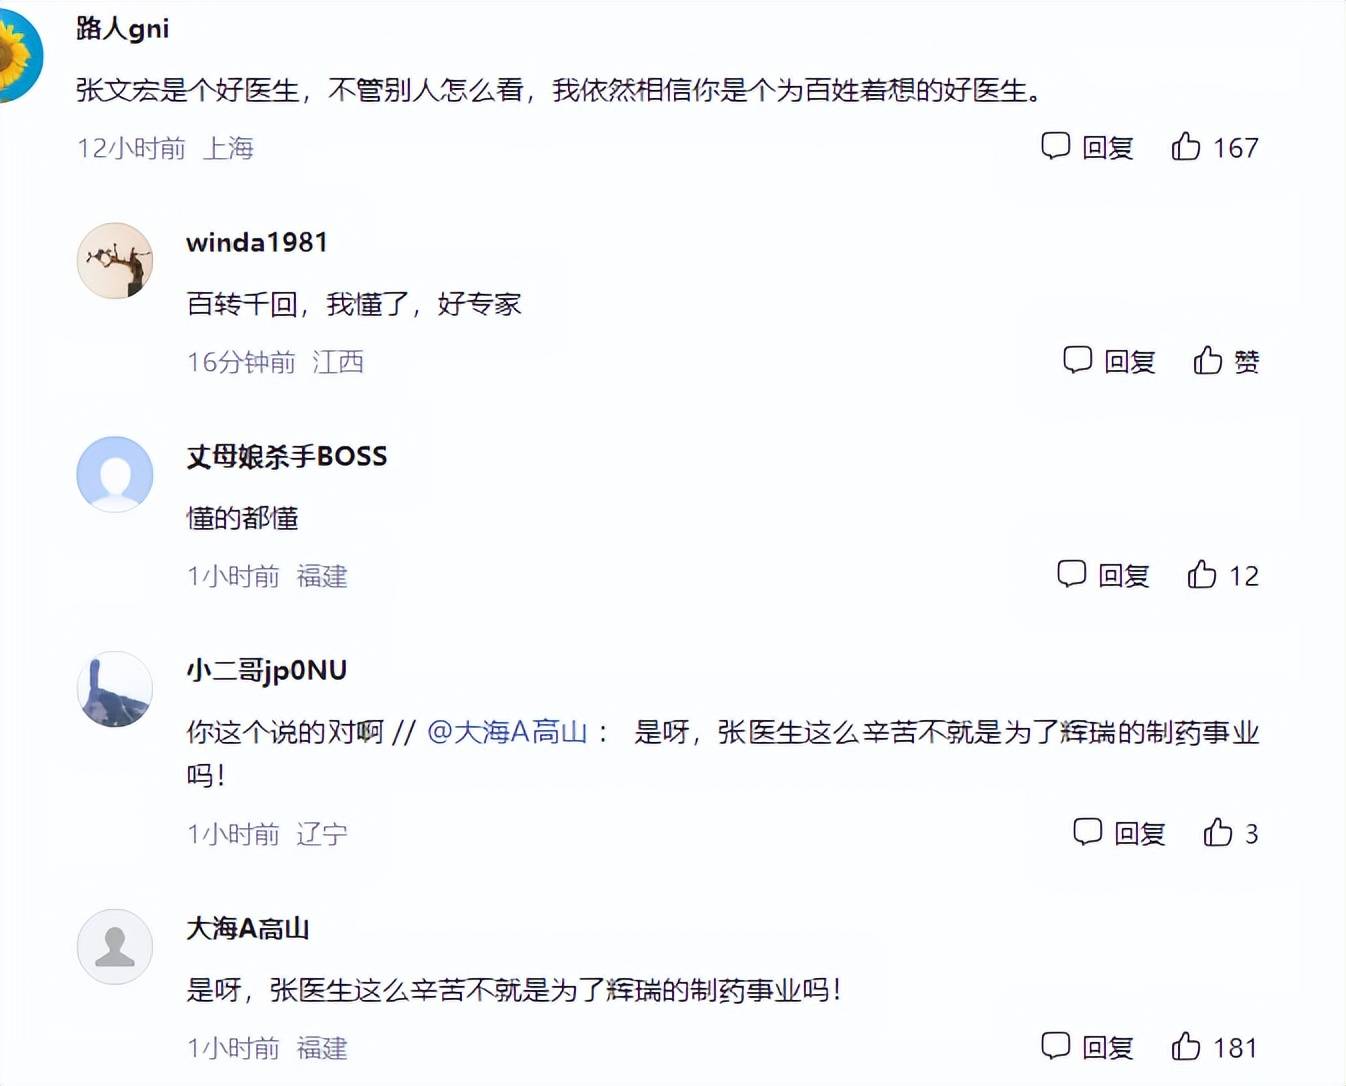 张文宏称抗病毒药一定要先用上,网友反映他已经下社区督办